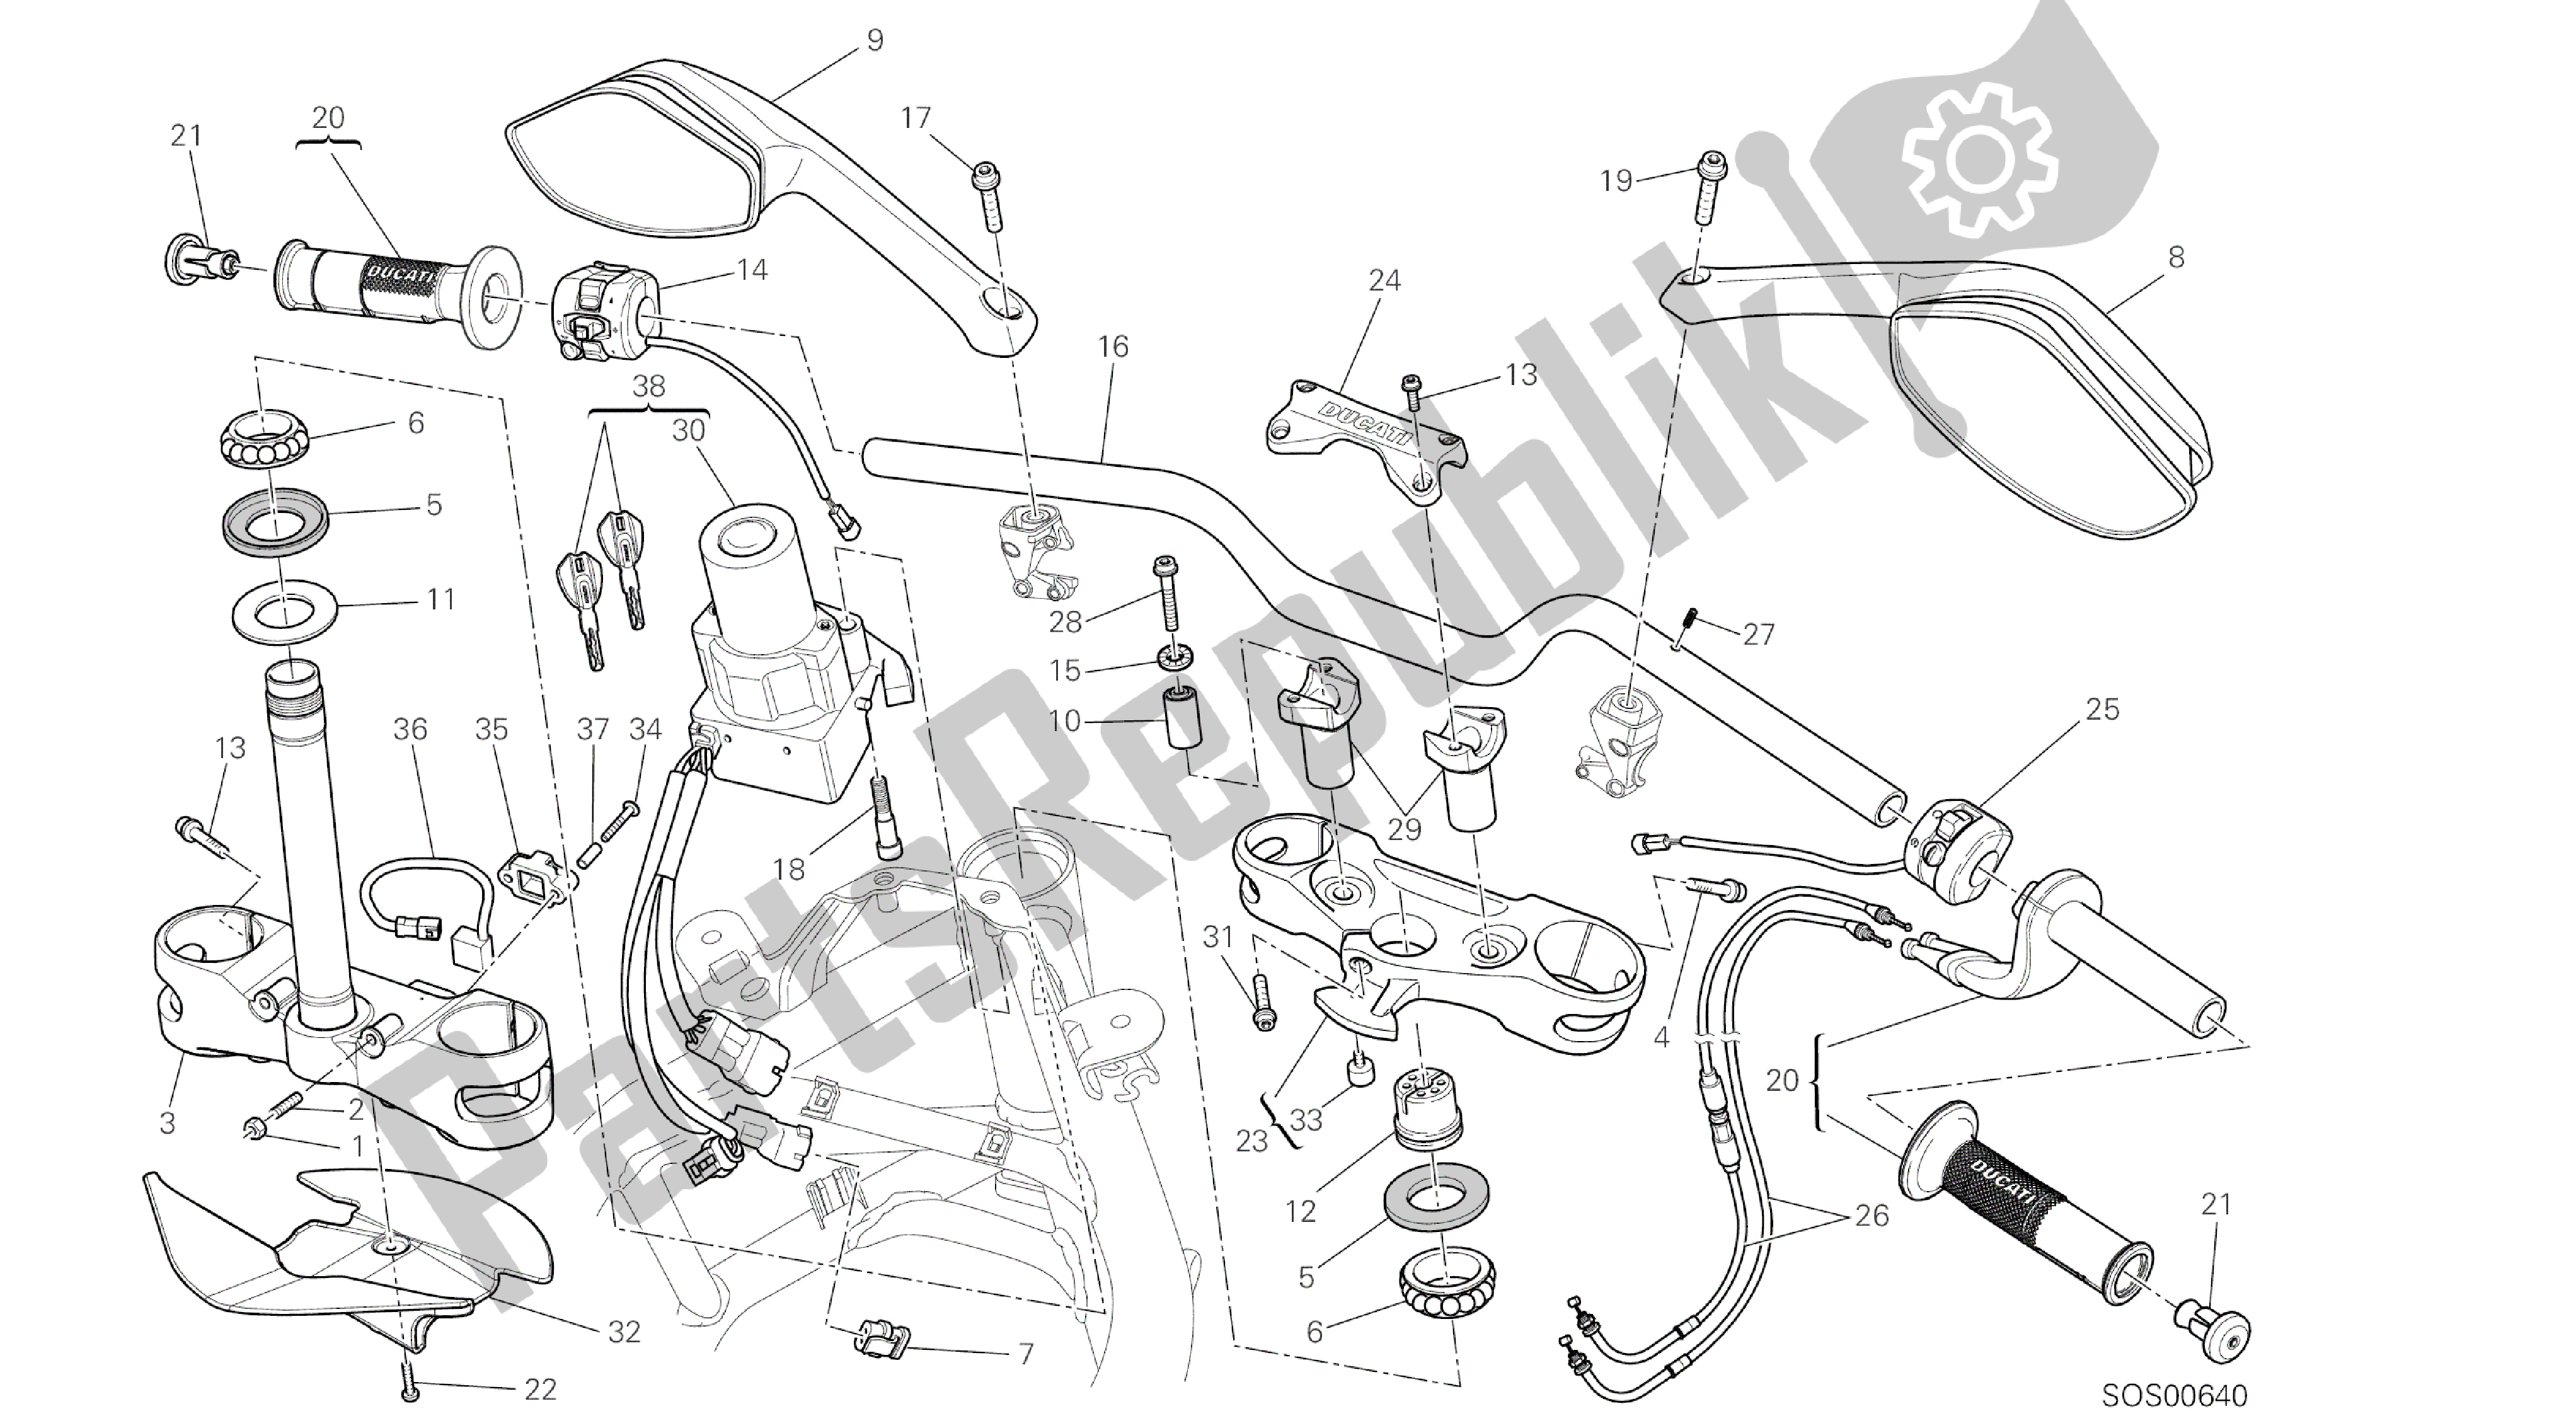 Tutte le parti per il Disegno 021 - Manubrio [mod: Ms1200pp; Xst: Aus, Eur, Fra, Jap, Tha] Frame Del Gruppo del Ducati Multistrada S Pikes Peak 1200 2014